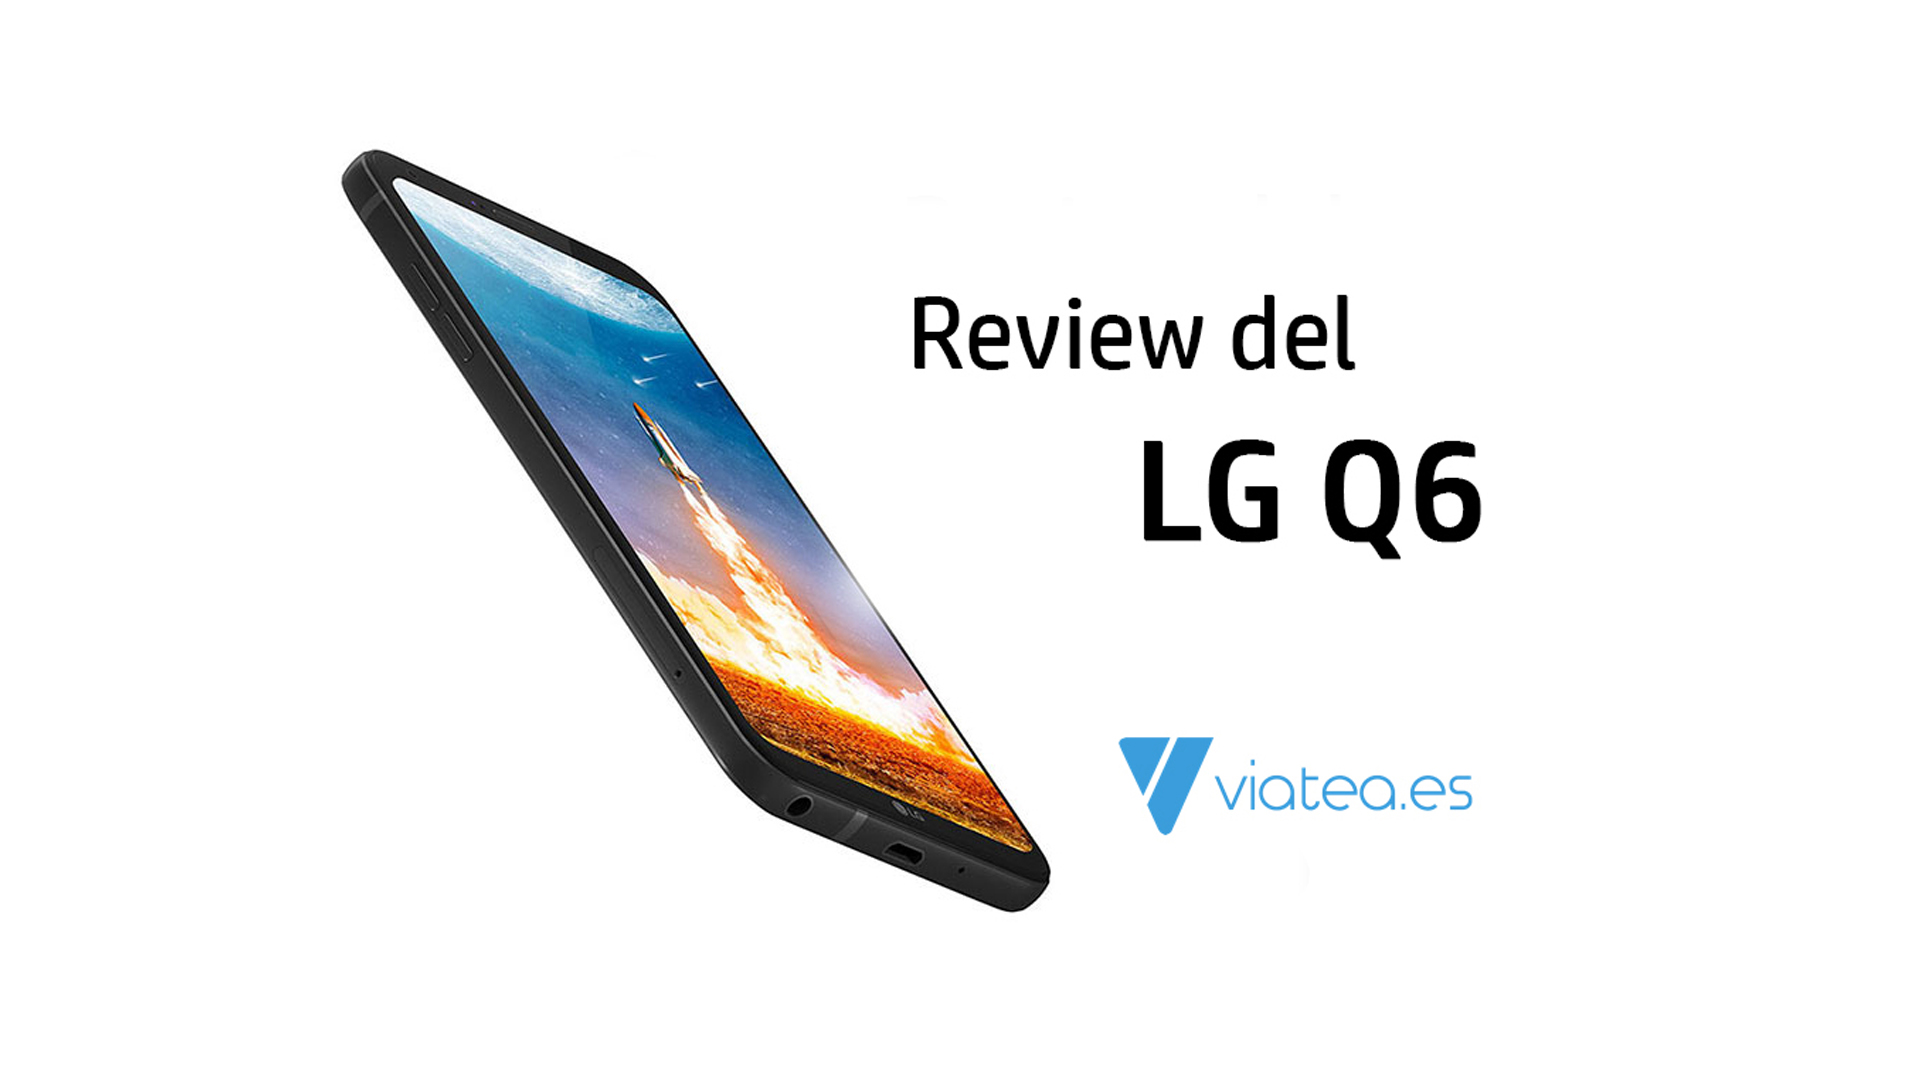 Review del LG Q6